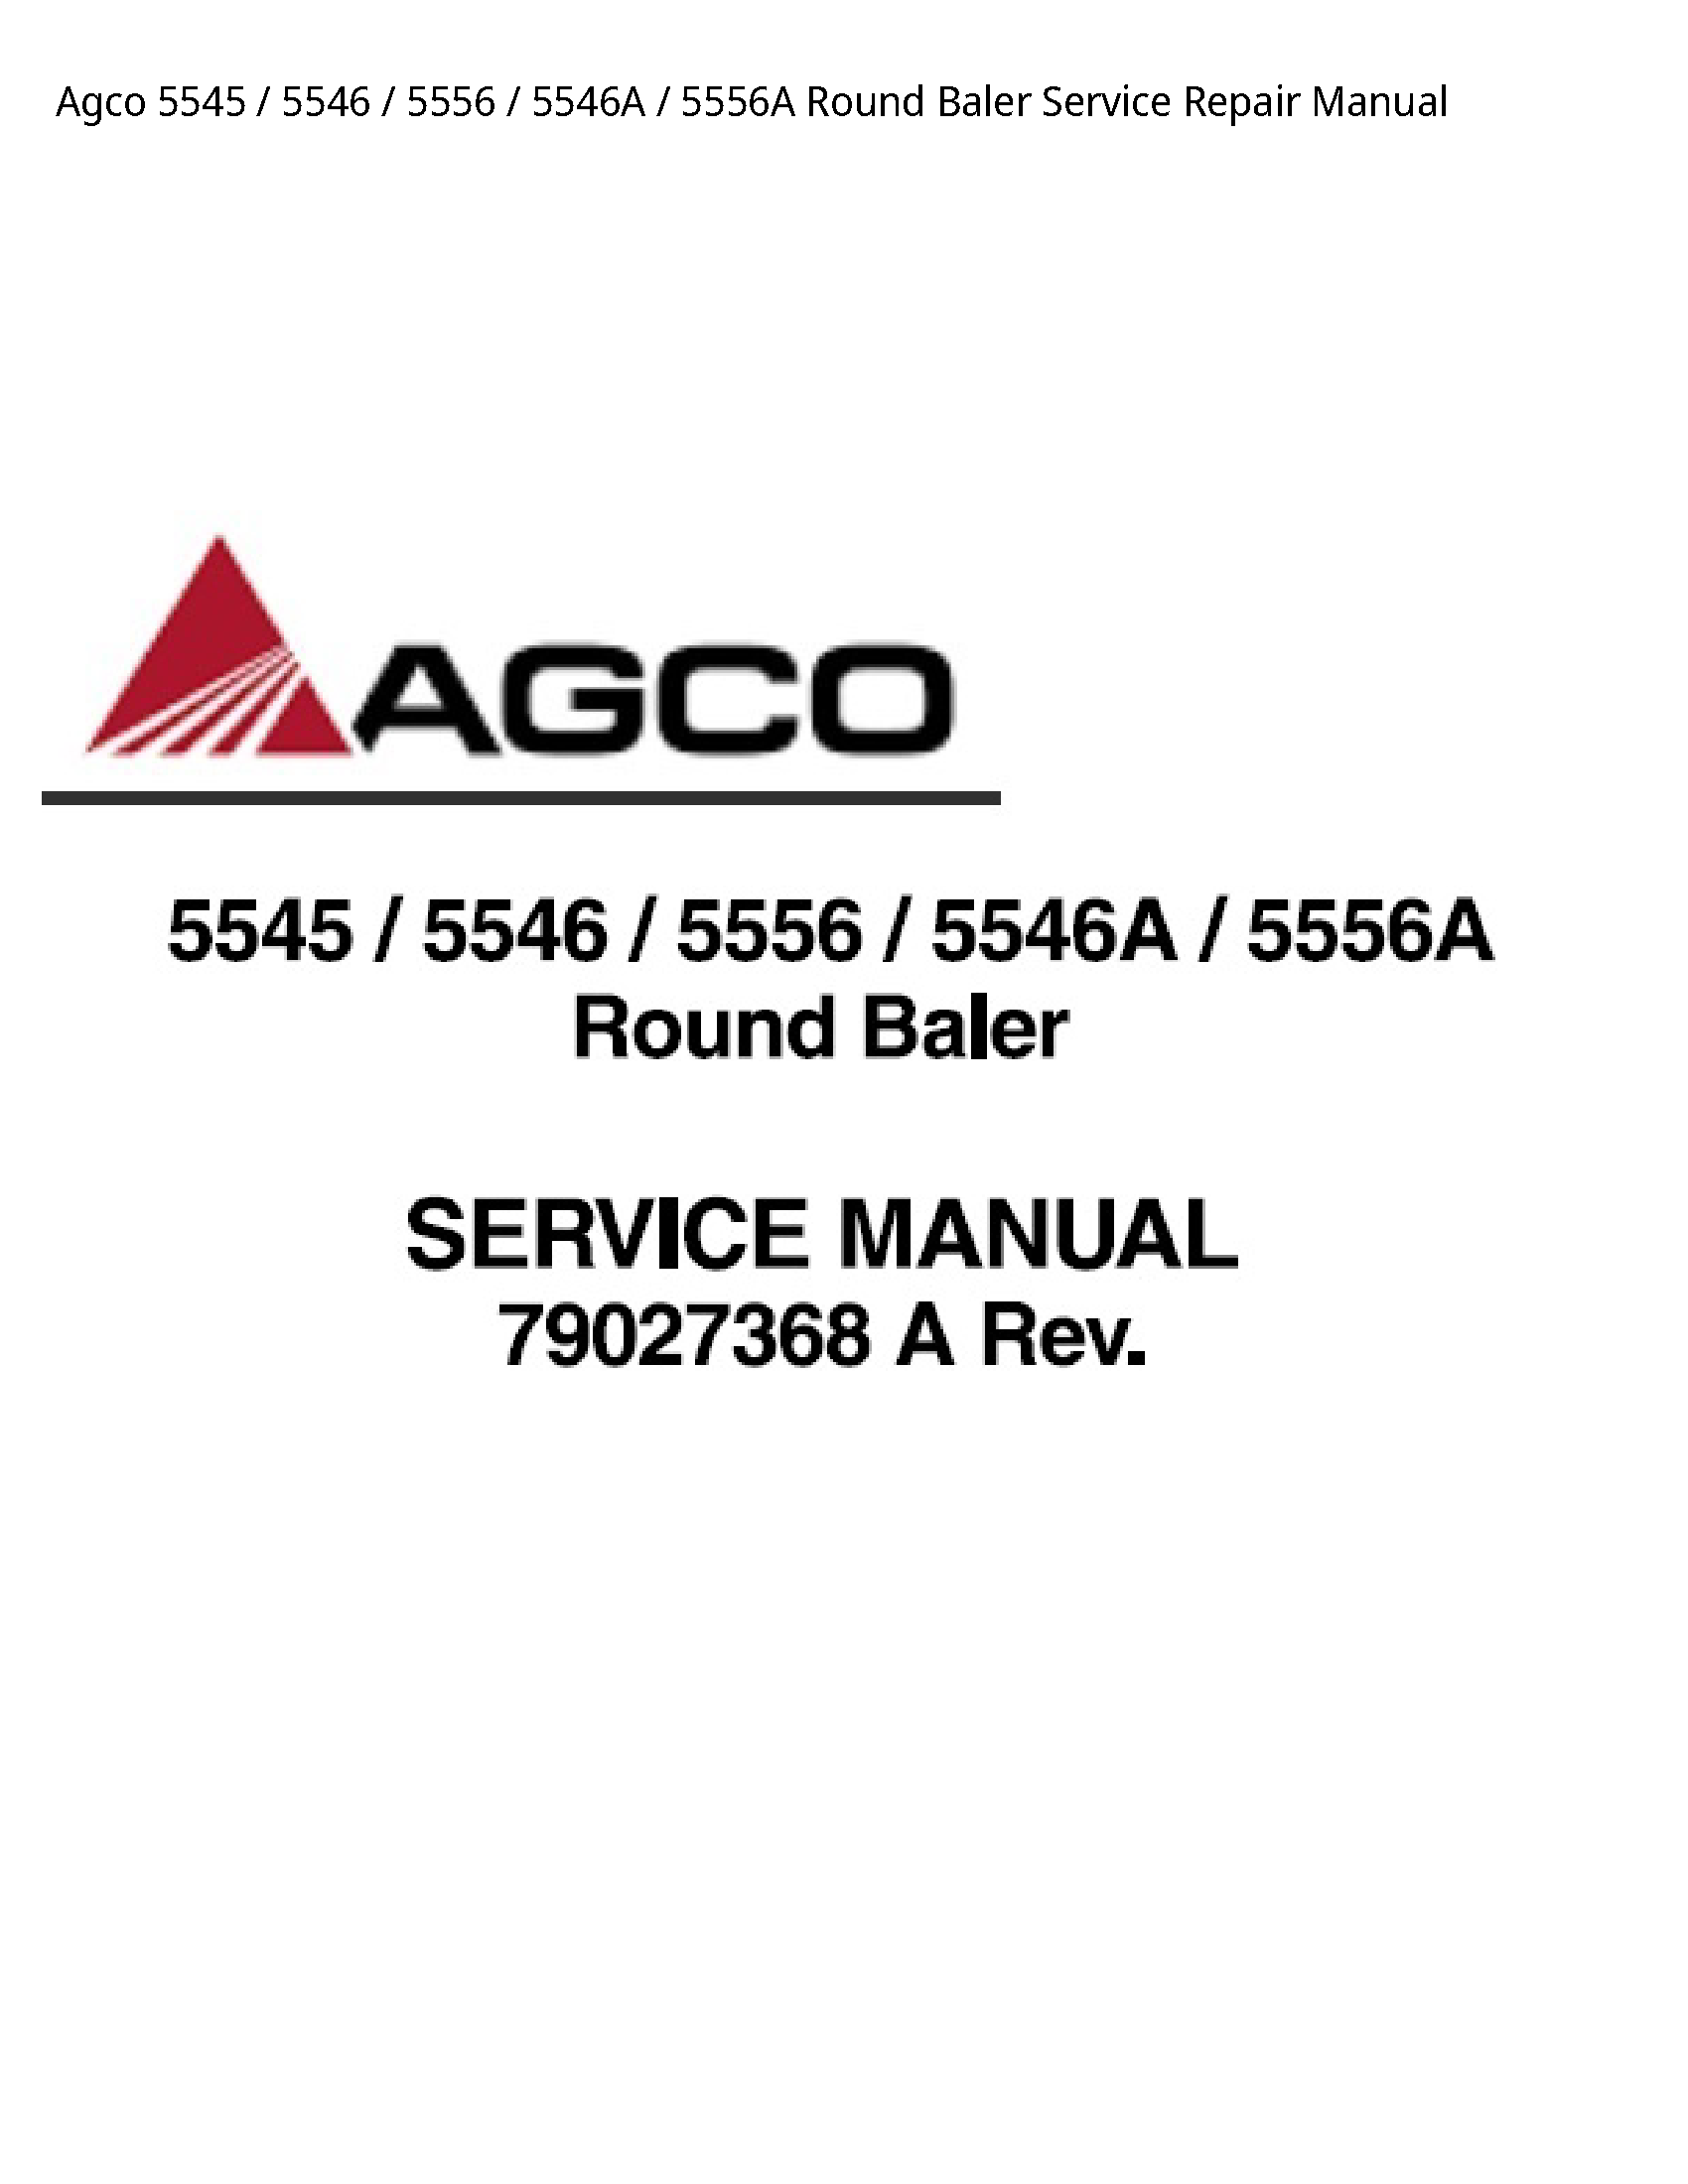 AGCO 5545 Round Baler manual